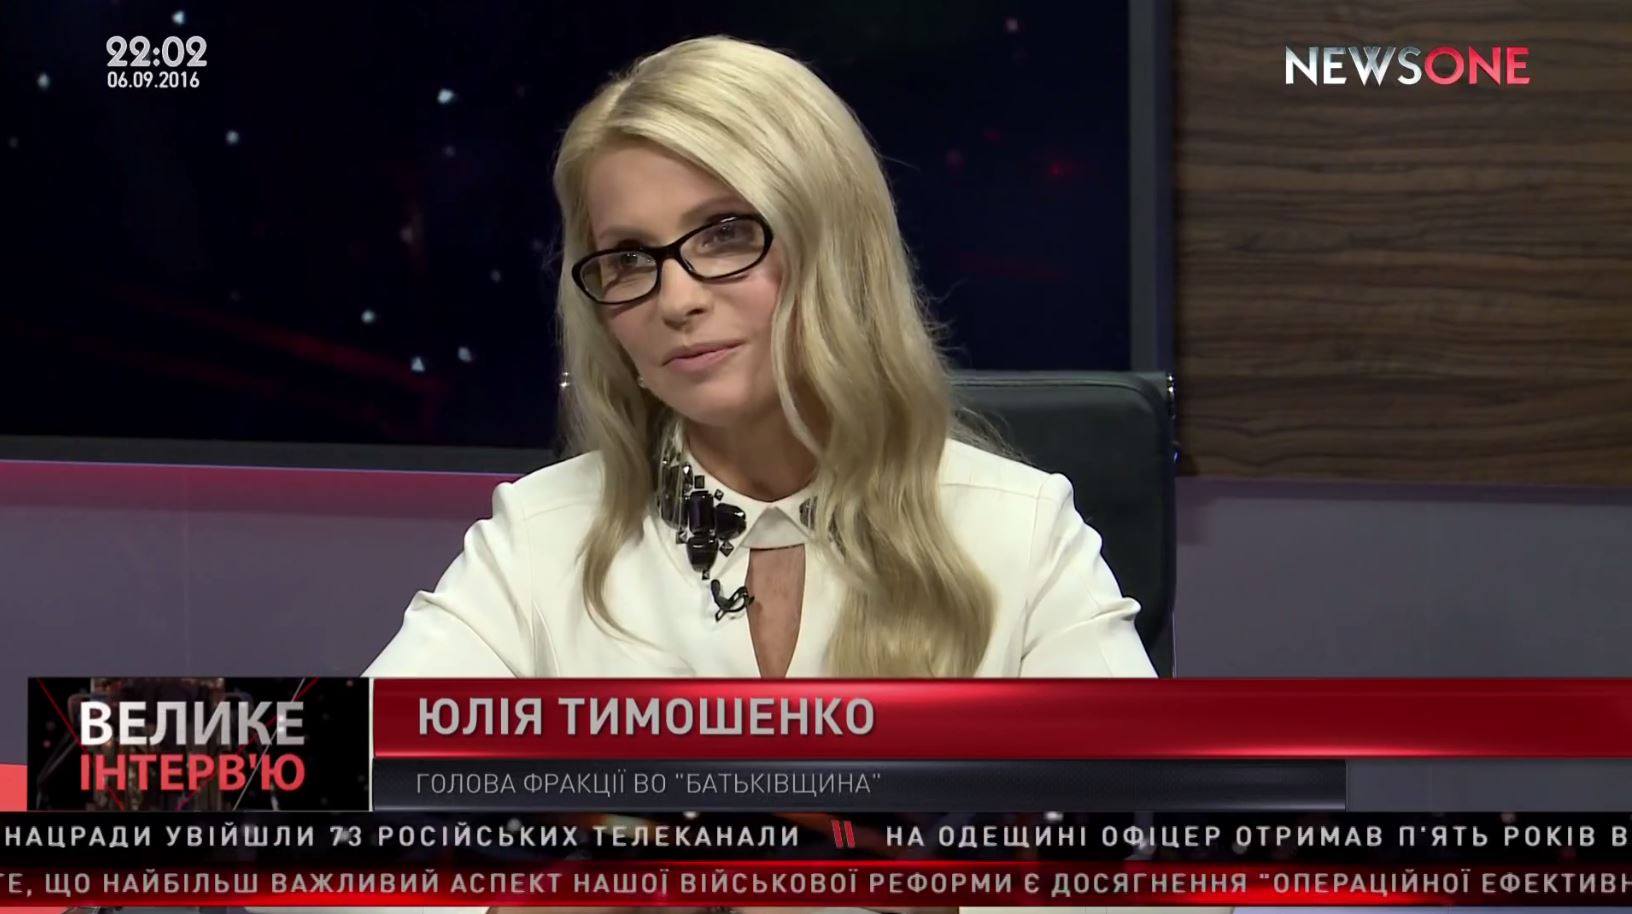 Досрочные парламентские выборы – единственный выход из критической ситуации в государстве, – Тимошенко